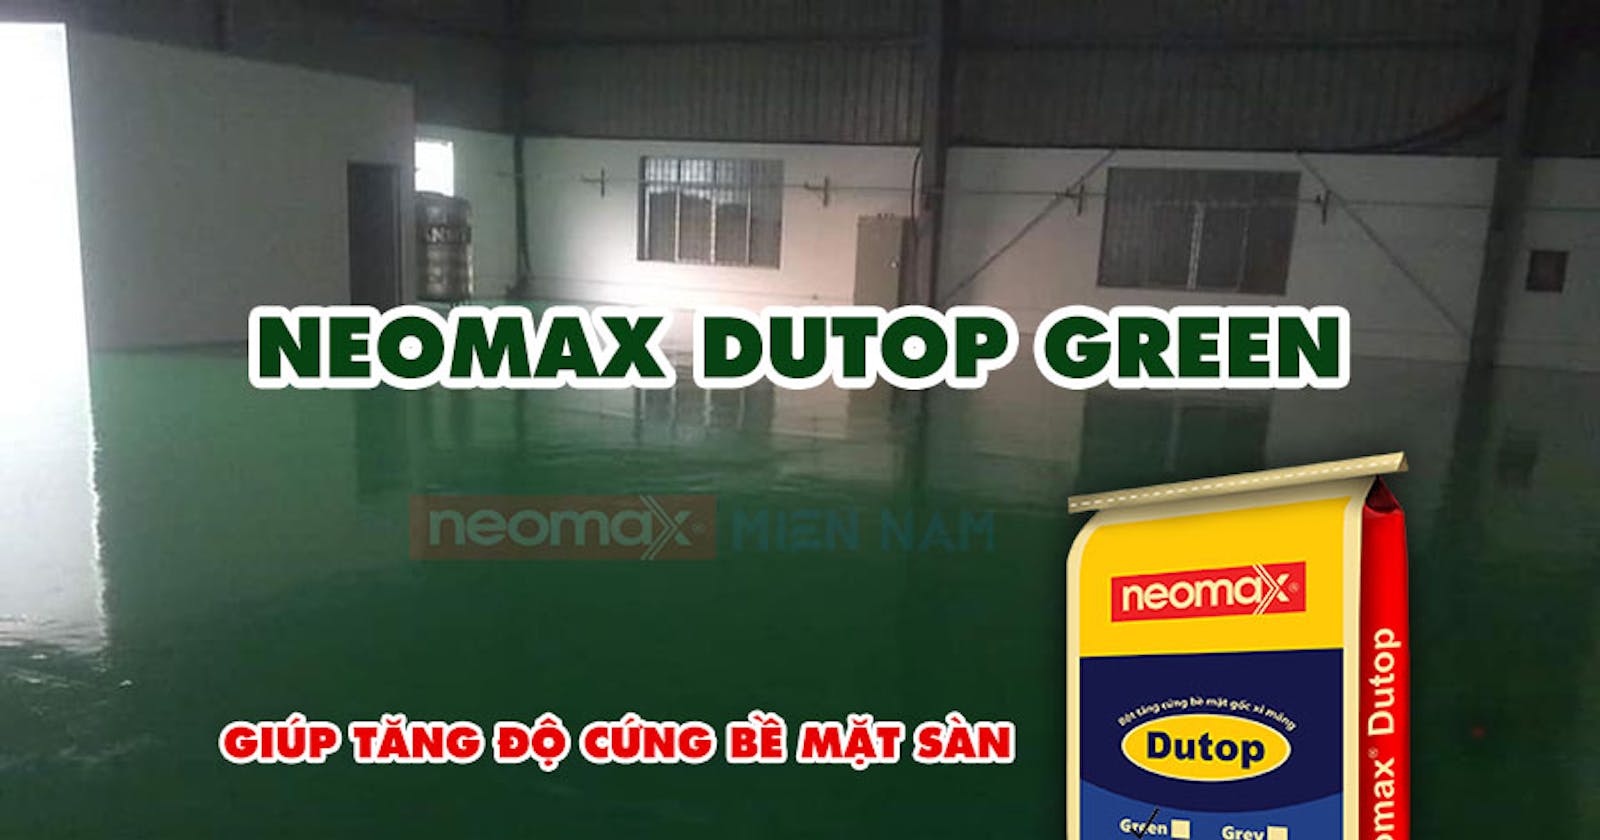 Báo giá Neomax Dutop Green tại Neomax Miền Nam